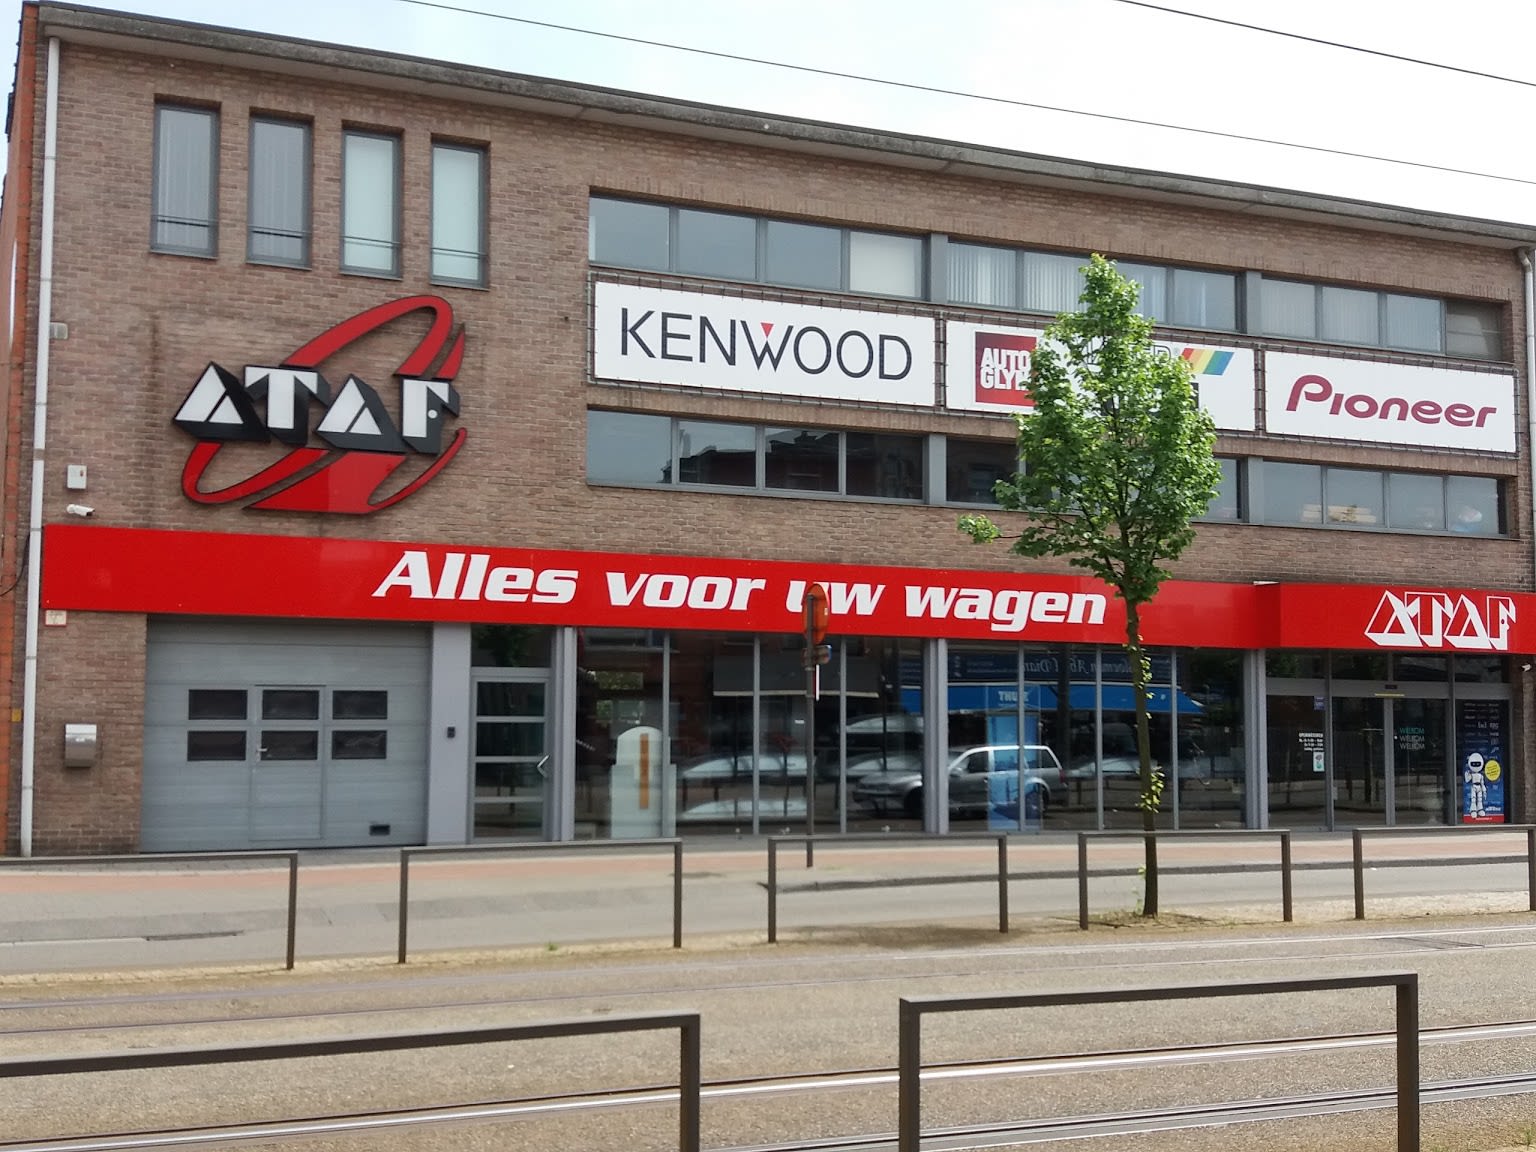 Ataf Antwerp